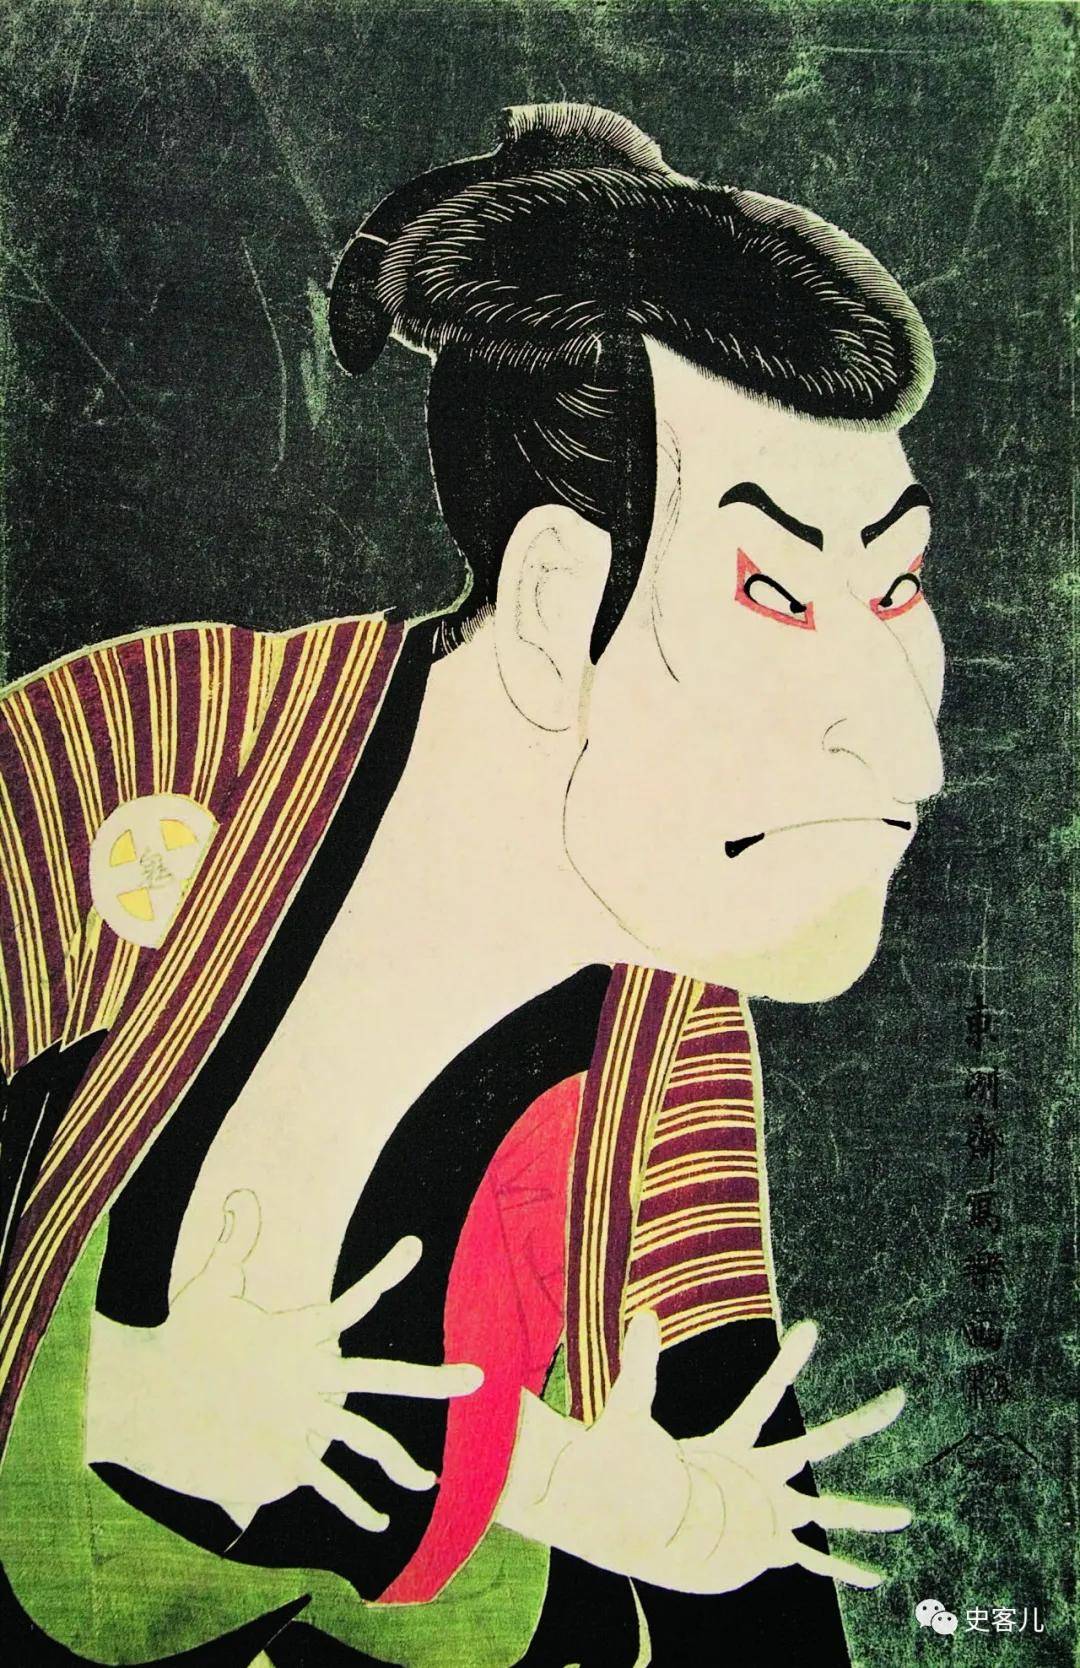 神秘天才歌舞伎画师的横空出世给浮世绘画坛带来强烈